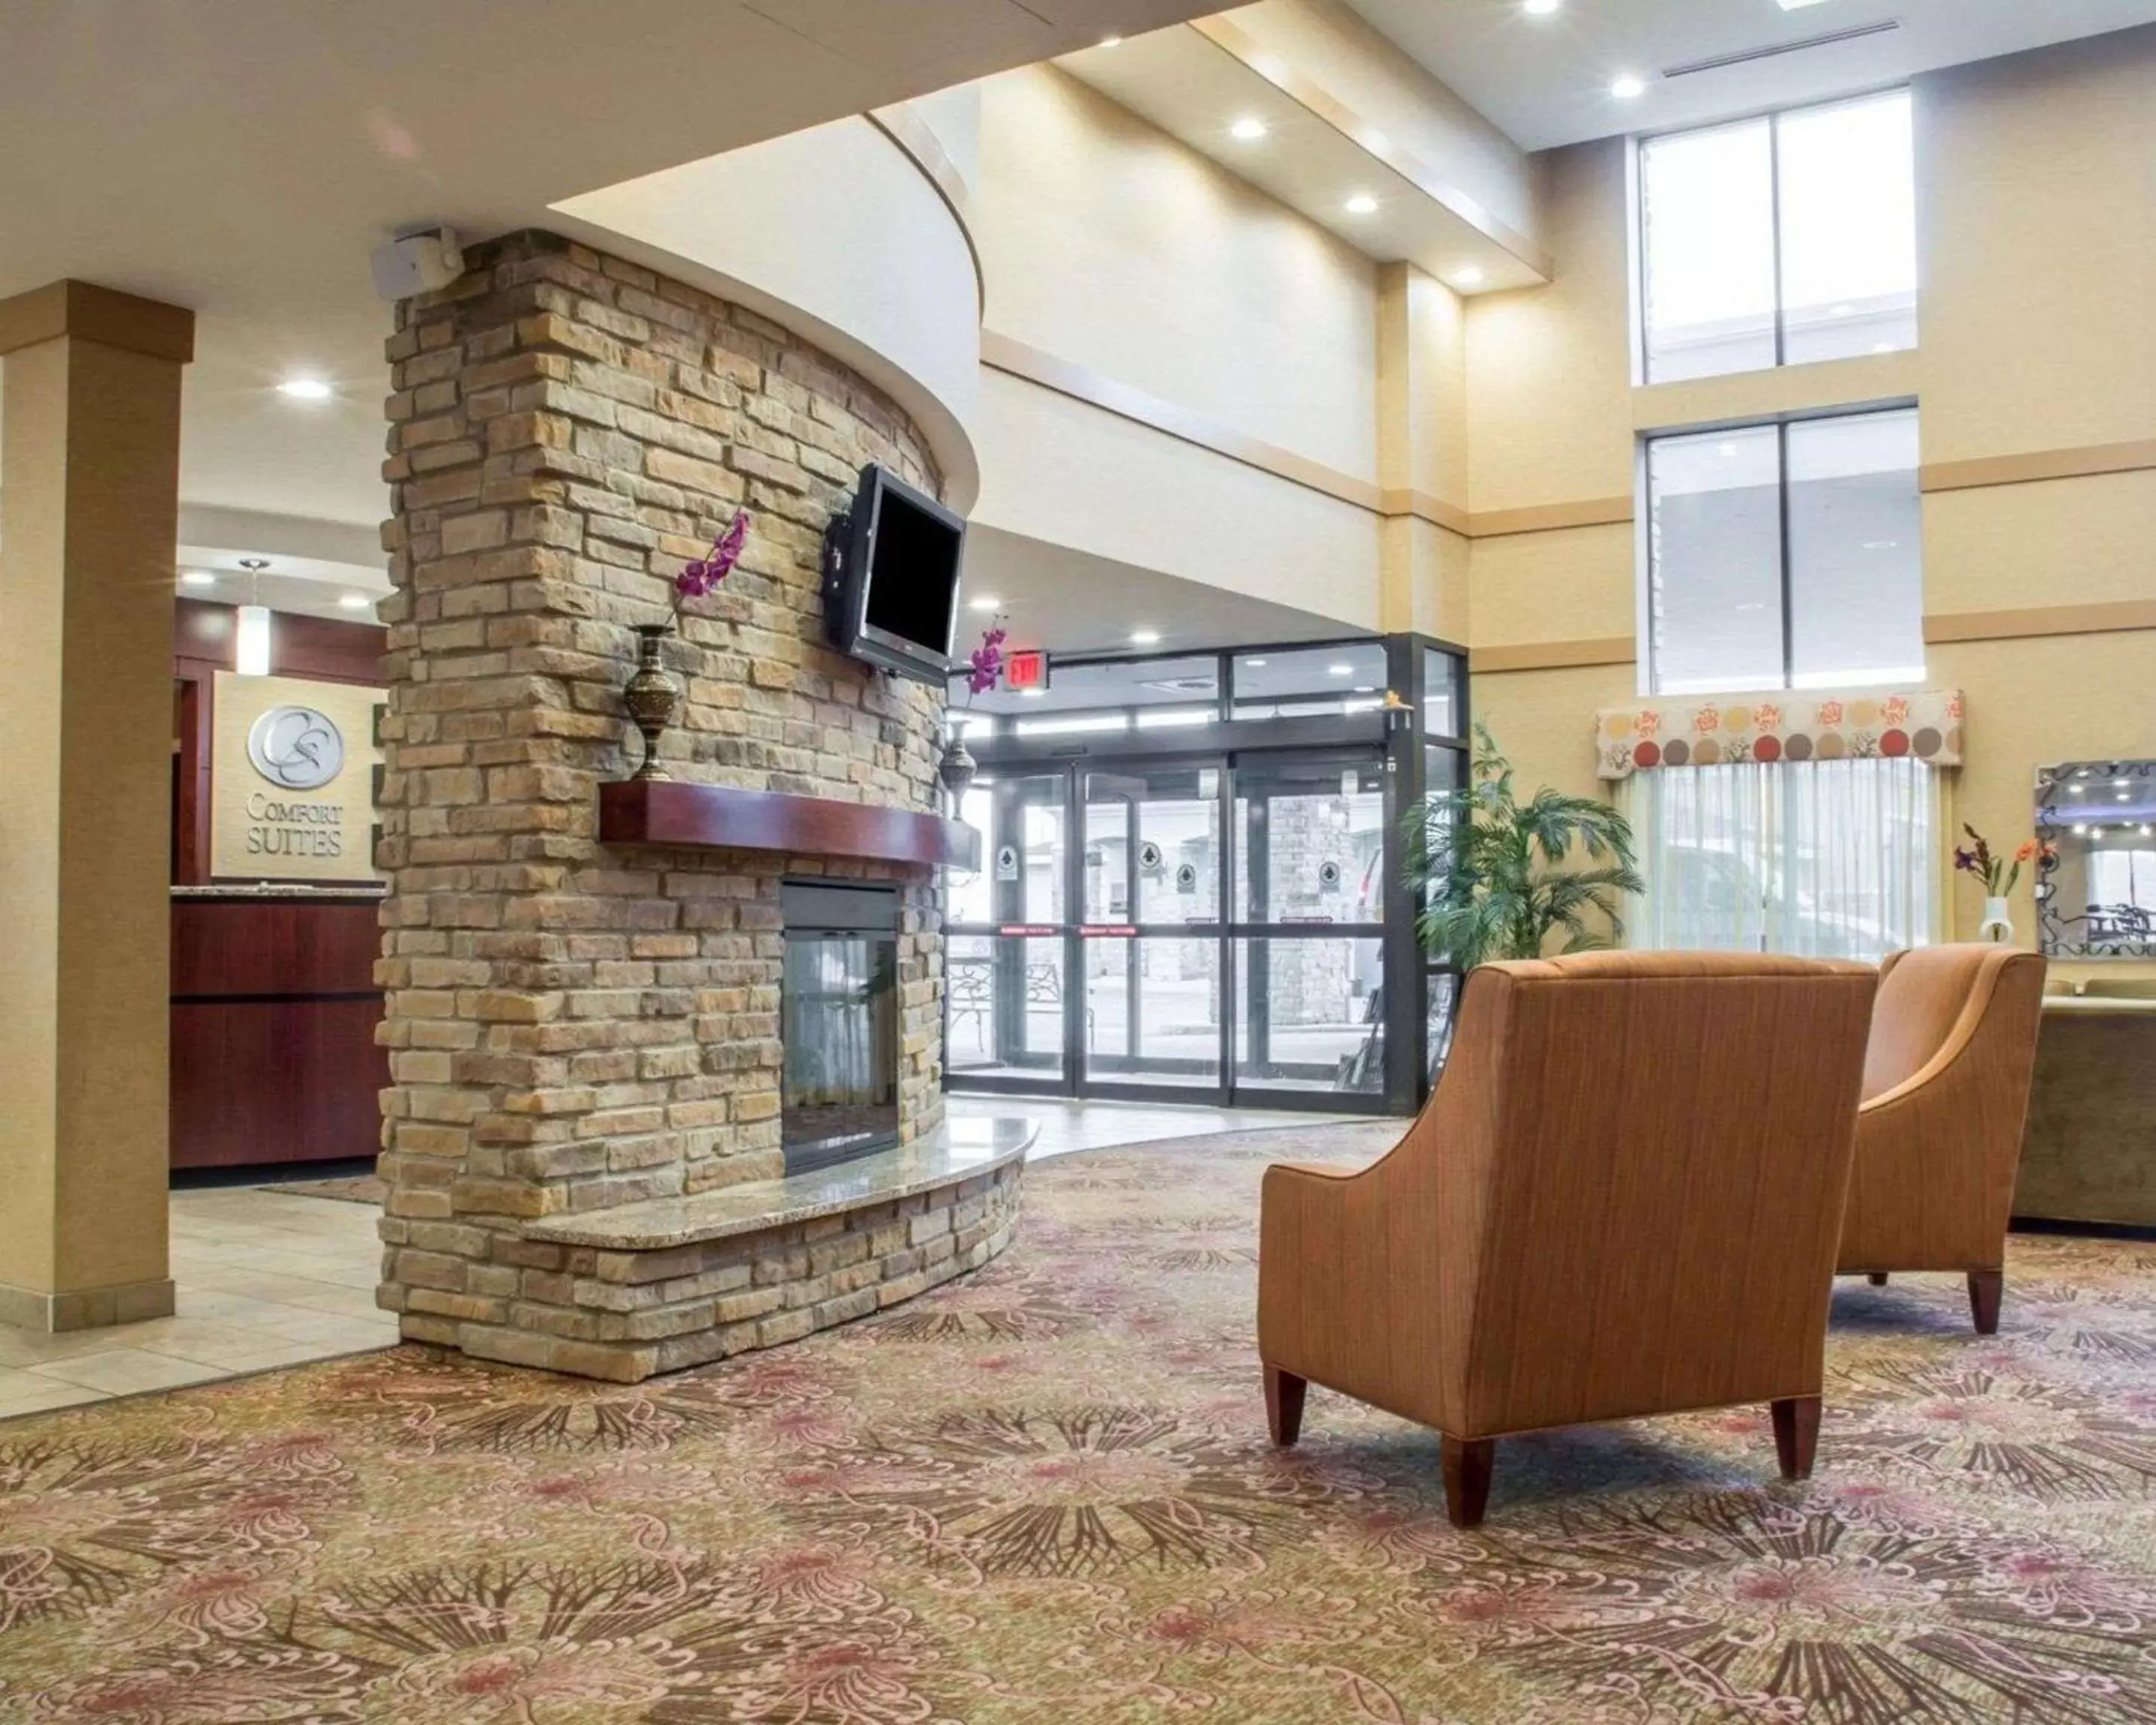 Lobby or reception in Comfort Suites Cicero - Syracuse North